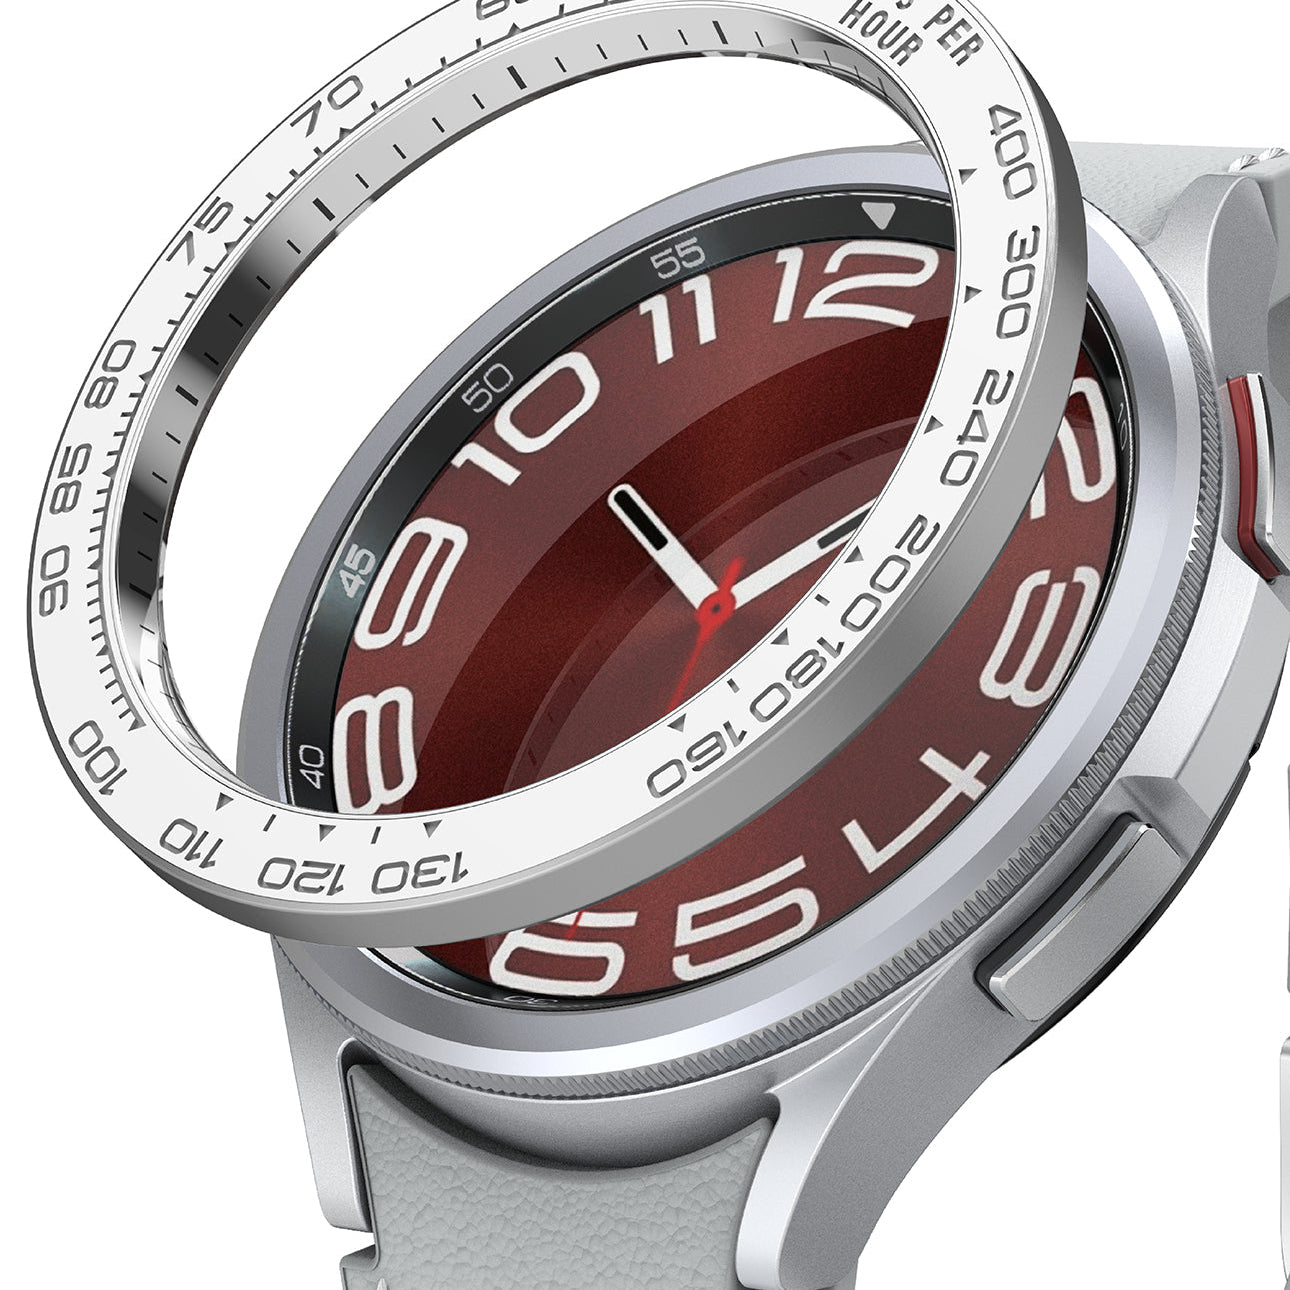 Galaxy Watch 6 Classic 43mm | Bezel Styling 43-97-White